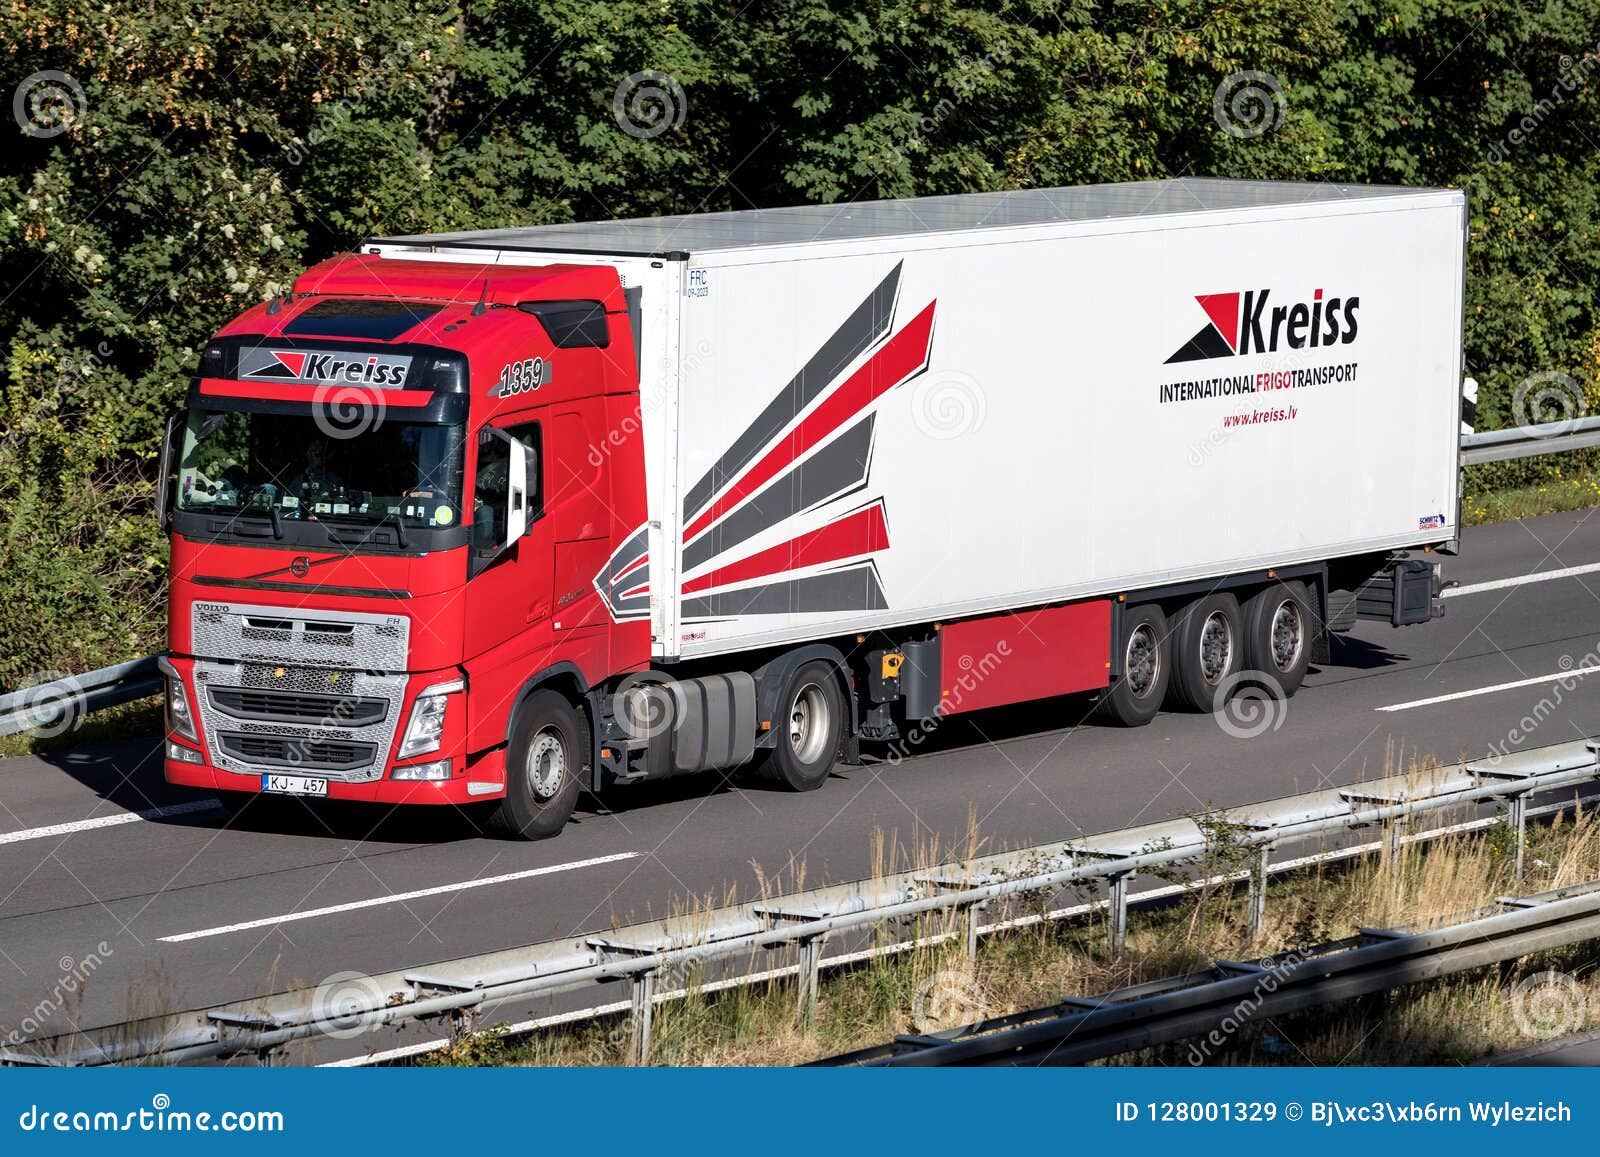 LV Nederland  LV Logistics